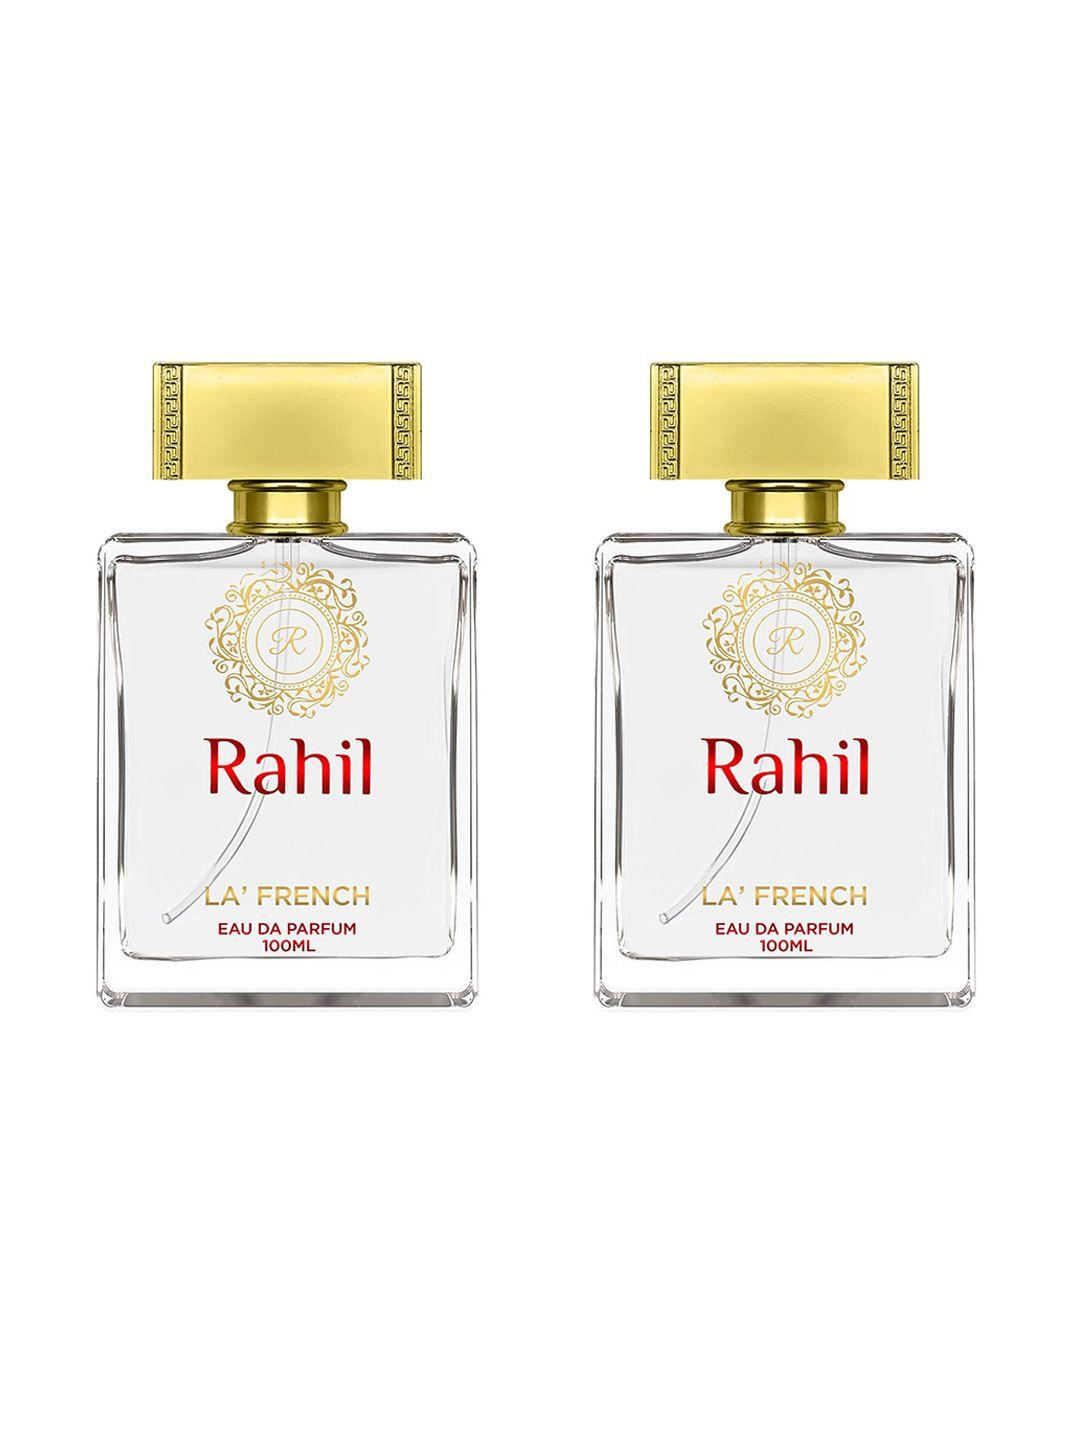 la french set of 2 rahil eau de parfum - 100ml each